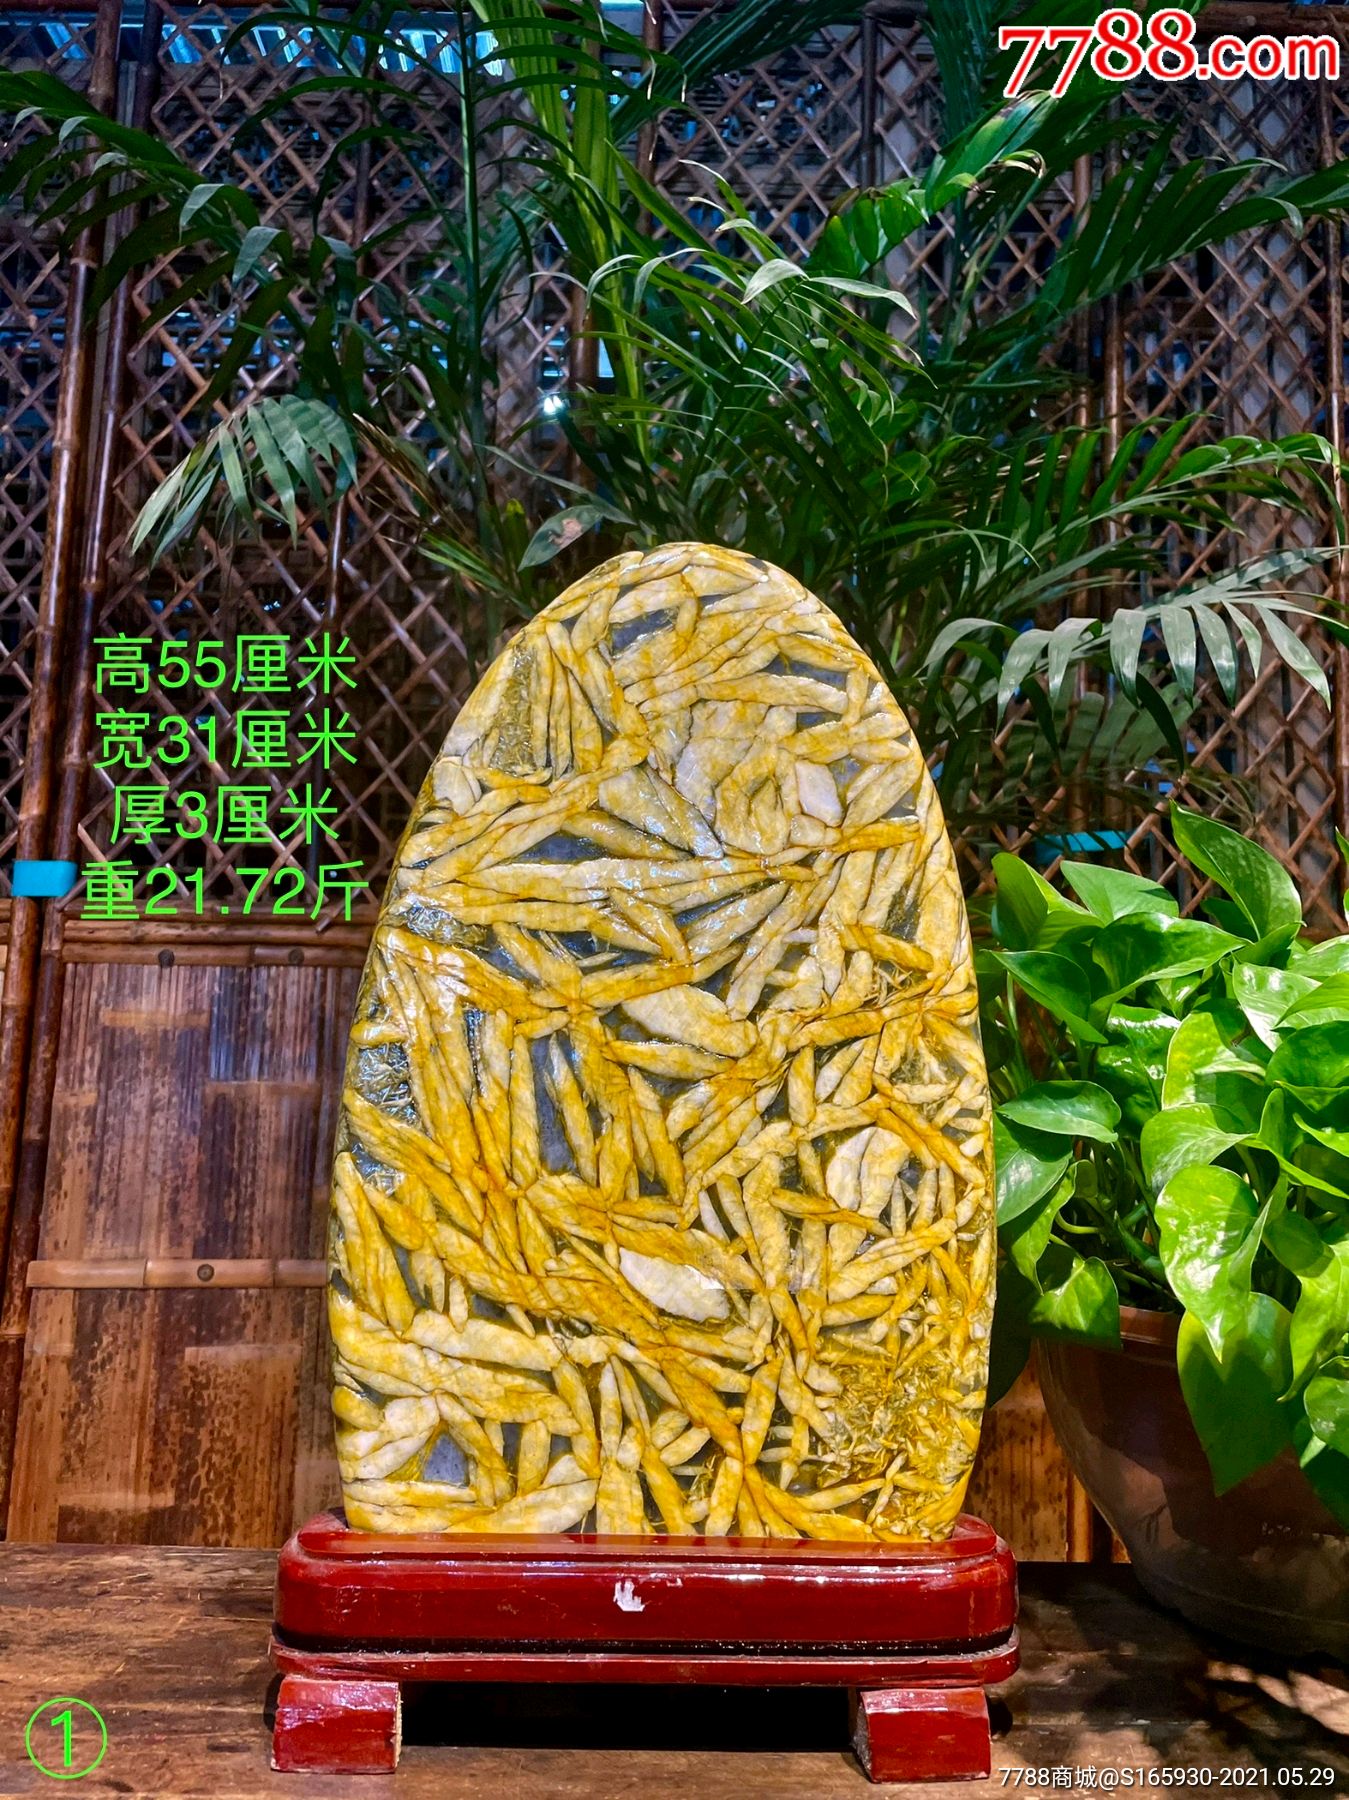 天然造型竹叶石黄金叶竹叶石,又称五花石鱼籽石,它是一种很有灵性的